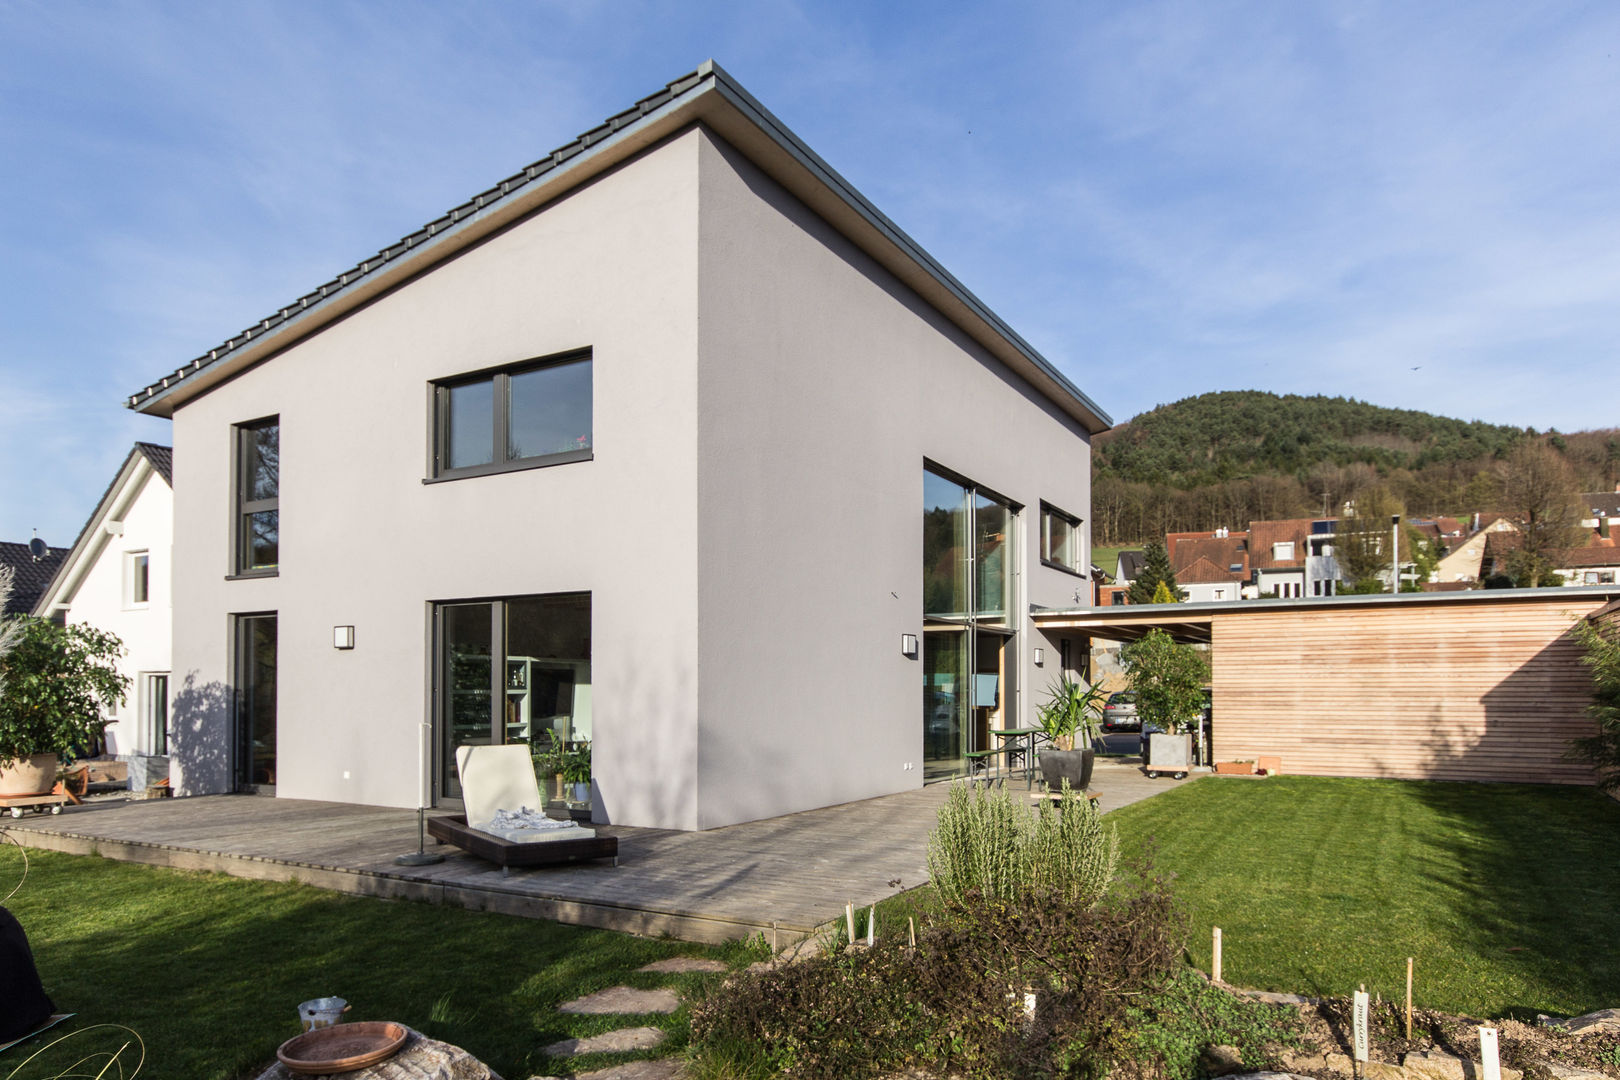 Haus OM in Seelbach, Schuler Architekten Schuler Architekten Modern houses